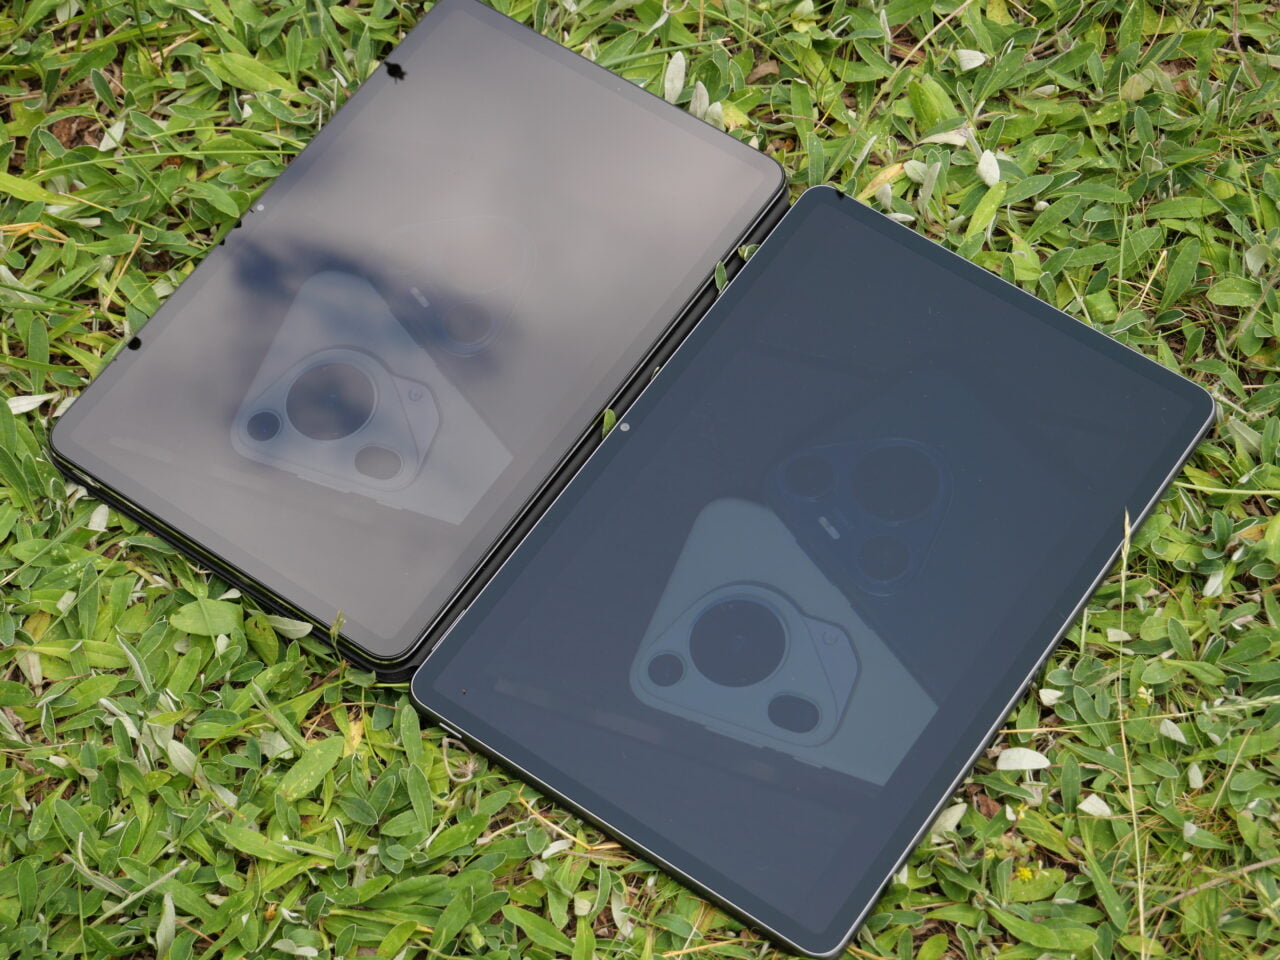 Dwa tablety leżące na trawie, z odbiciem kamery na ekranach.